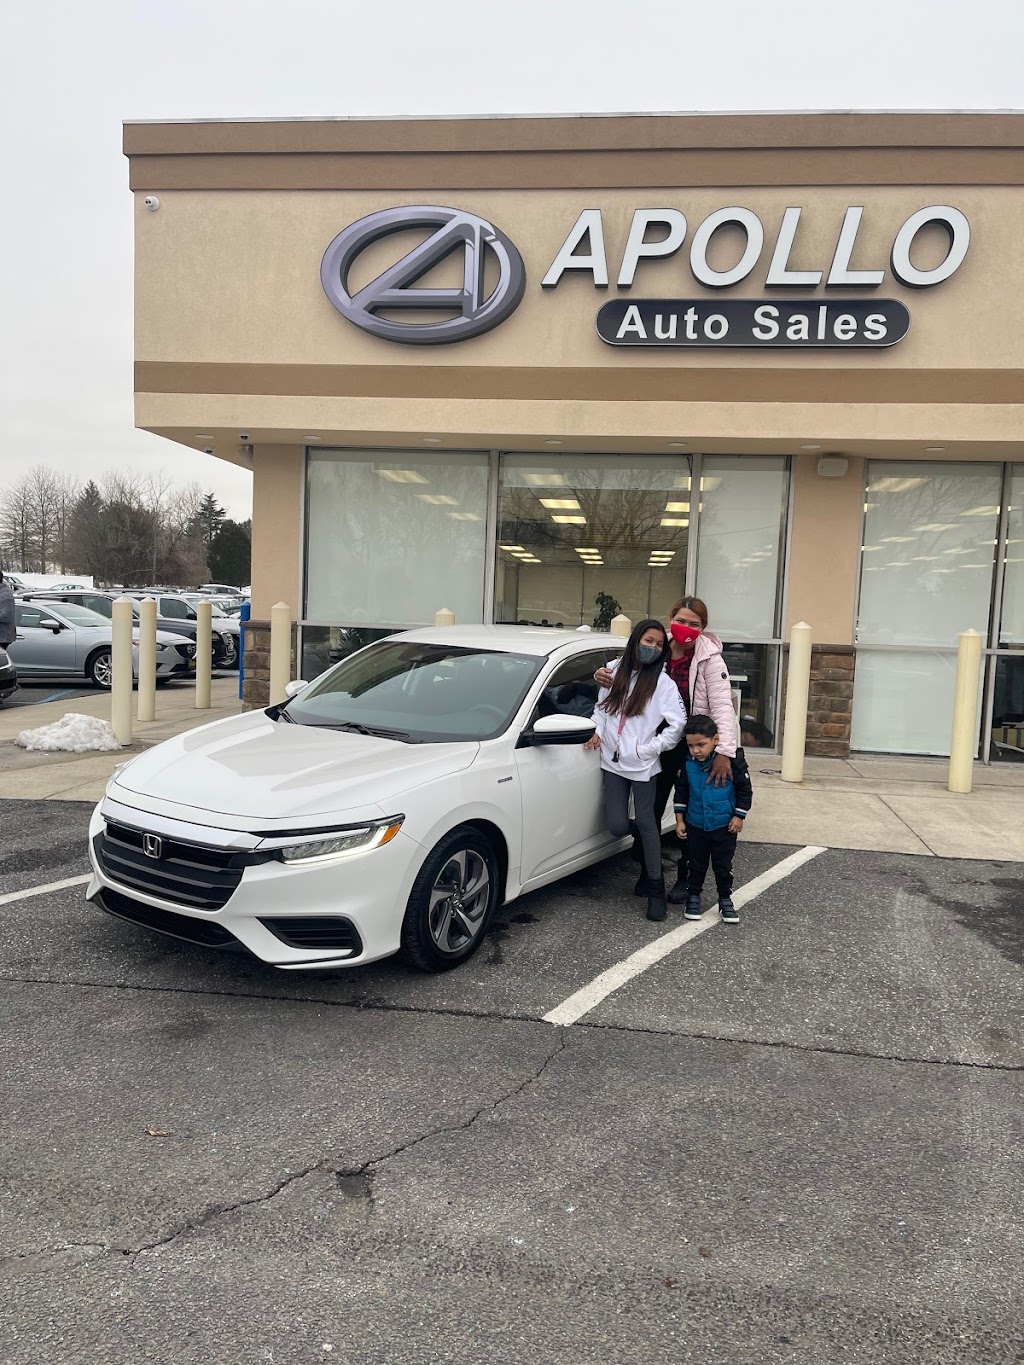 Apollo Auto Sales | 573 Delsea Dr, Sewell, NJ 08080 | Phone: (856) 881-2869